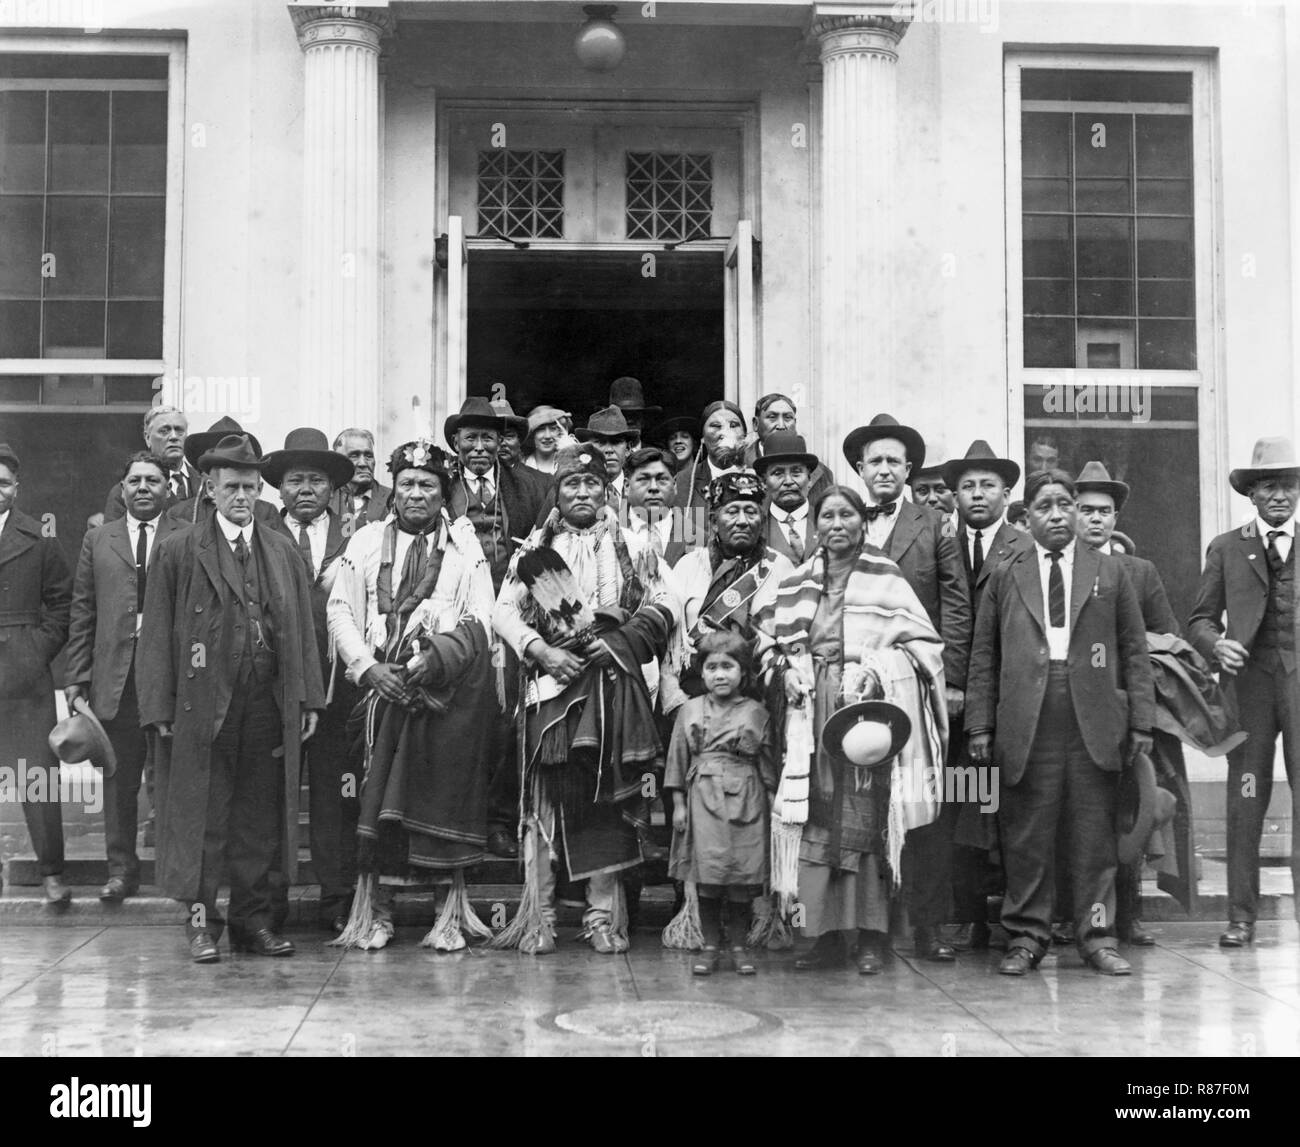 Groupe indien à Maison Blanche, Washington DC, USA, National Photo Company, 1910 Banque D'Images